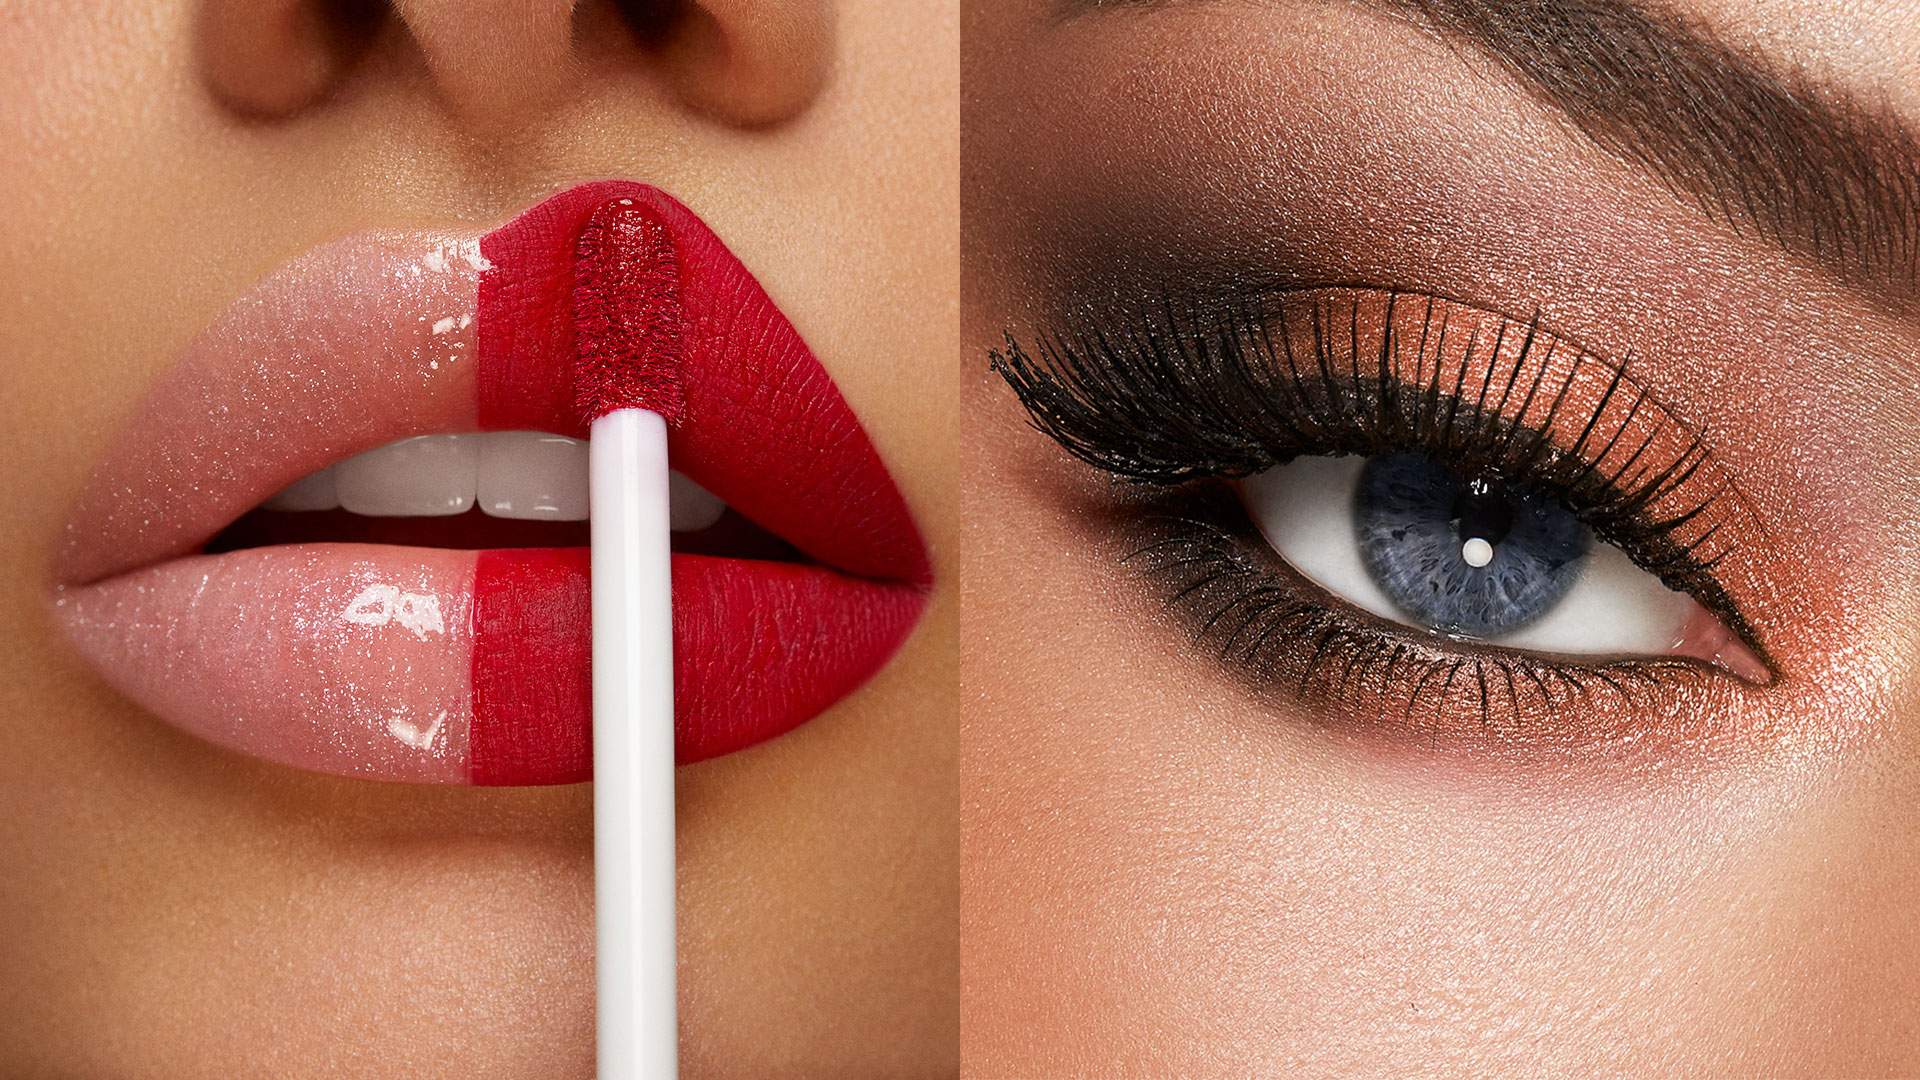 Le Maquillage – Concept Beauty Esthétic